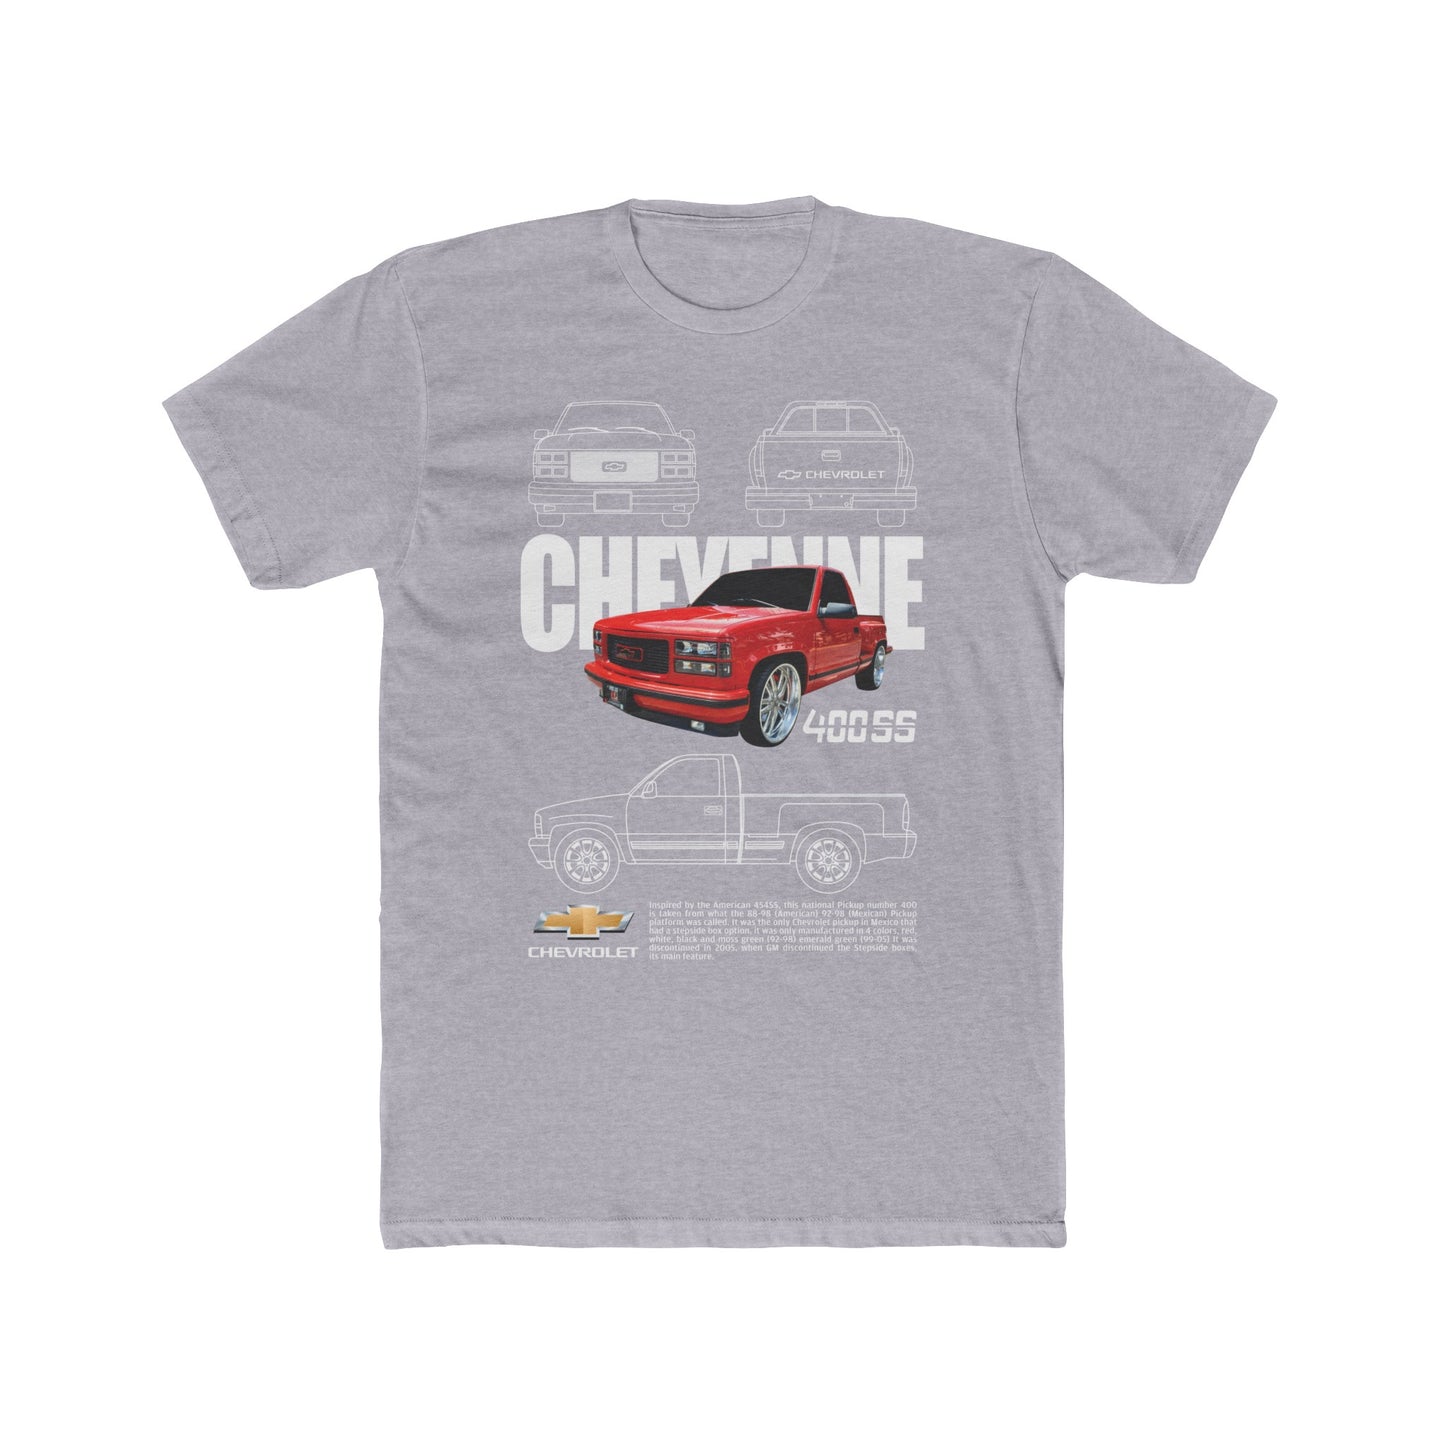 Premium Men's Cheyenne T-Shirt